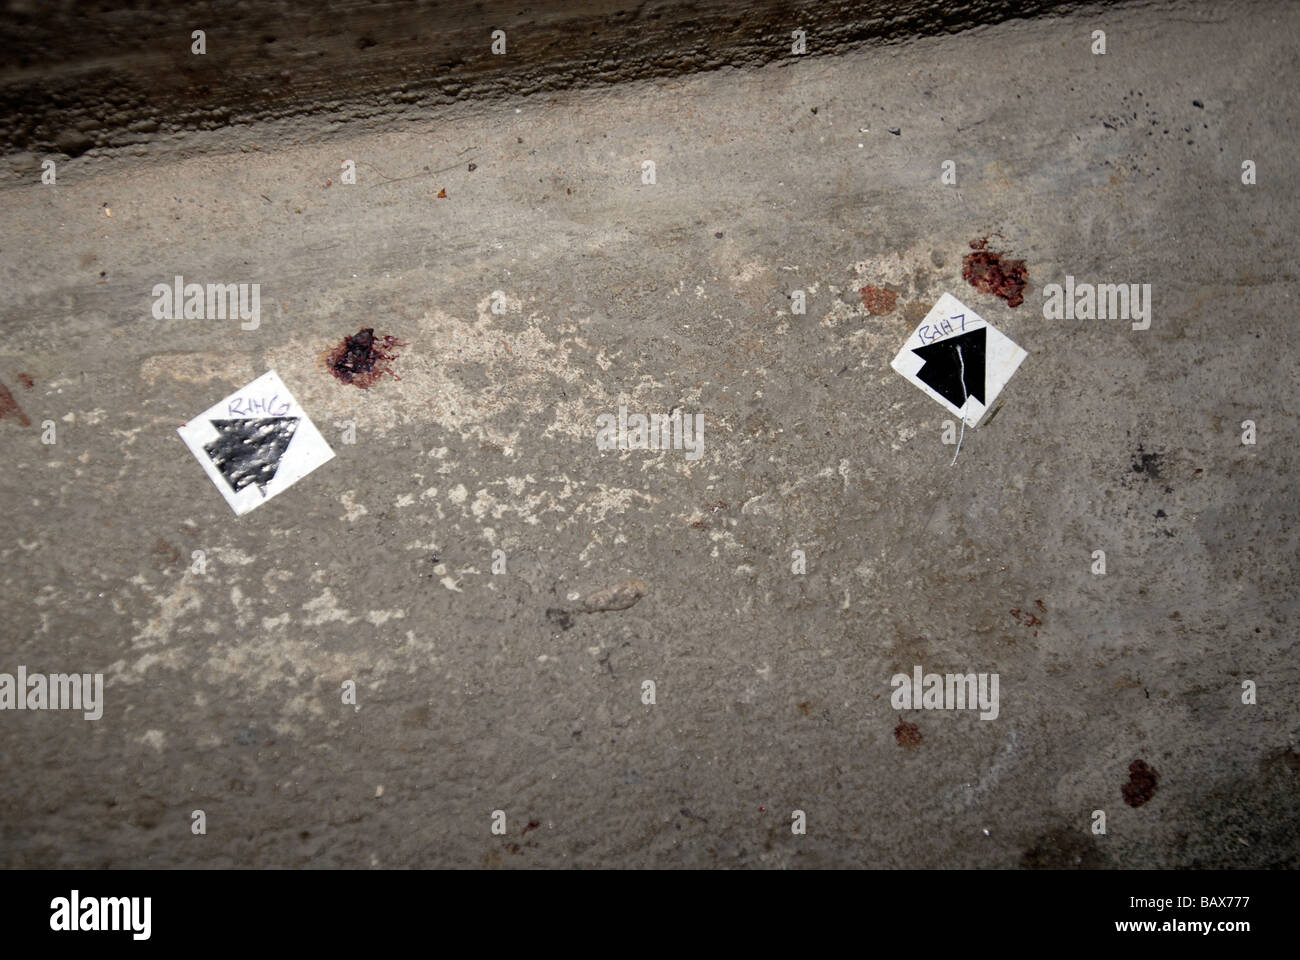 Taches de sang marqué par une flèche noire dans une scène de crime Banque D'Images